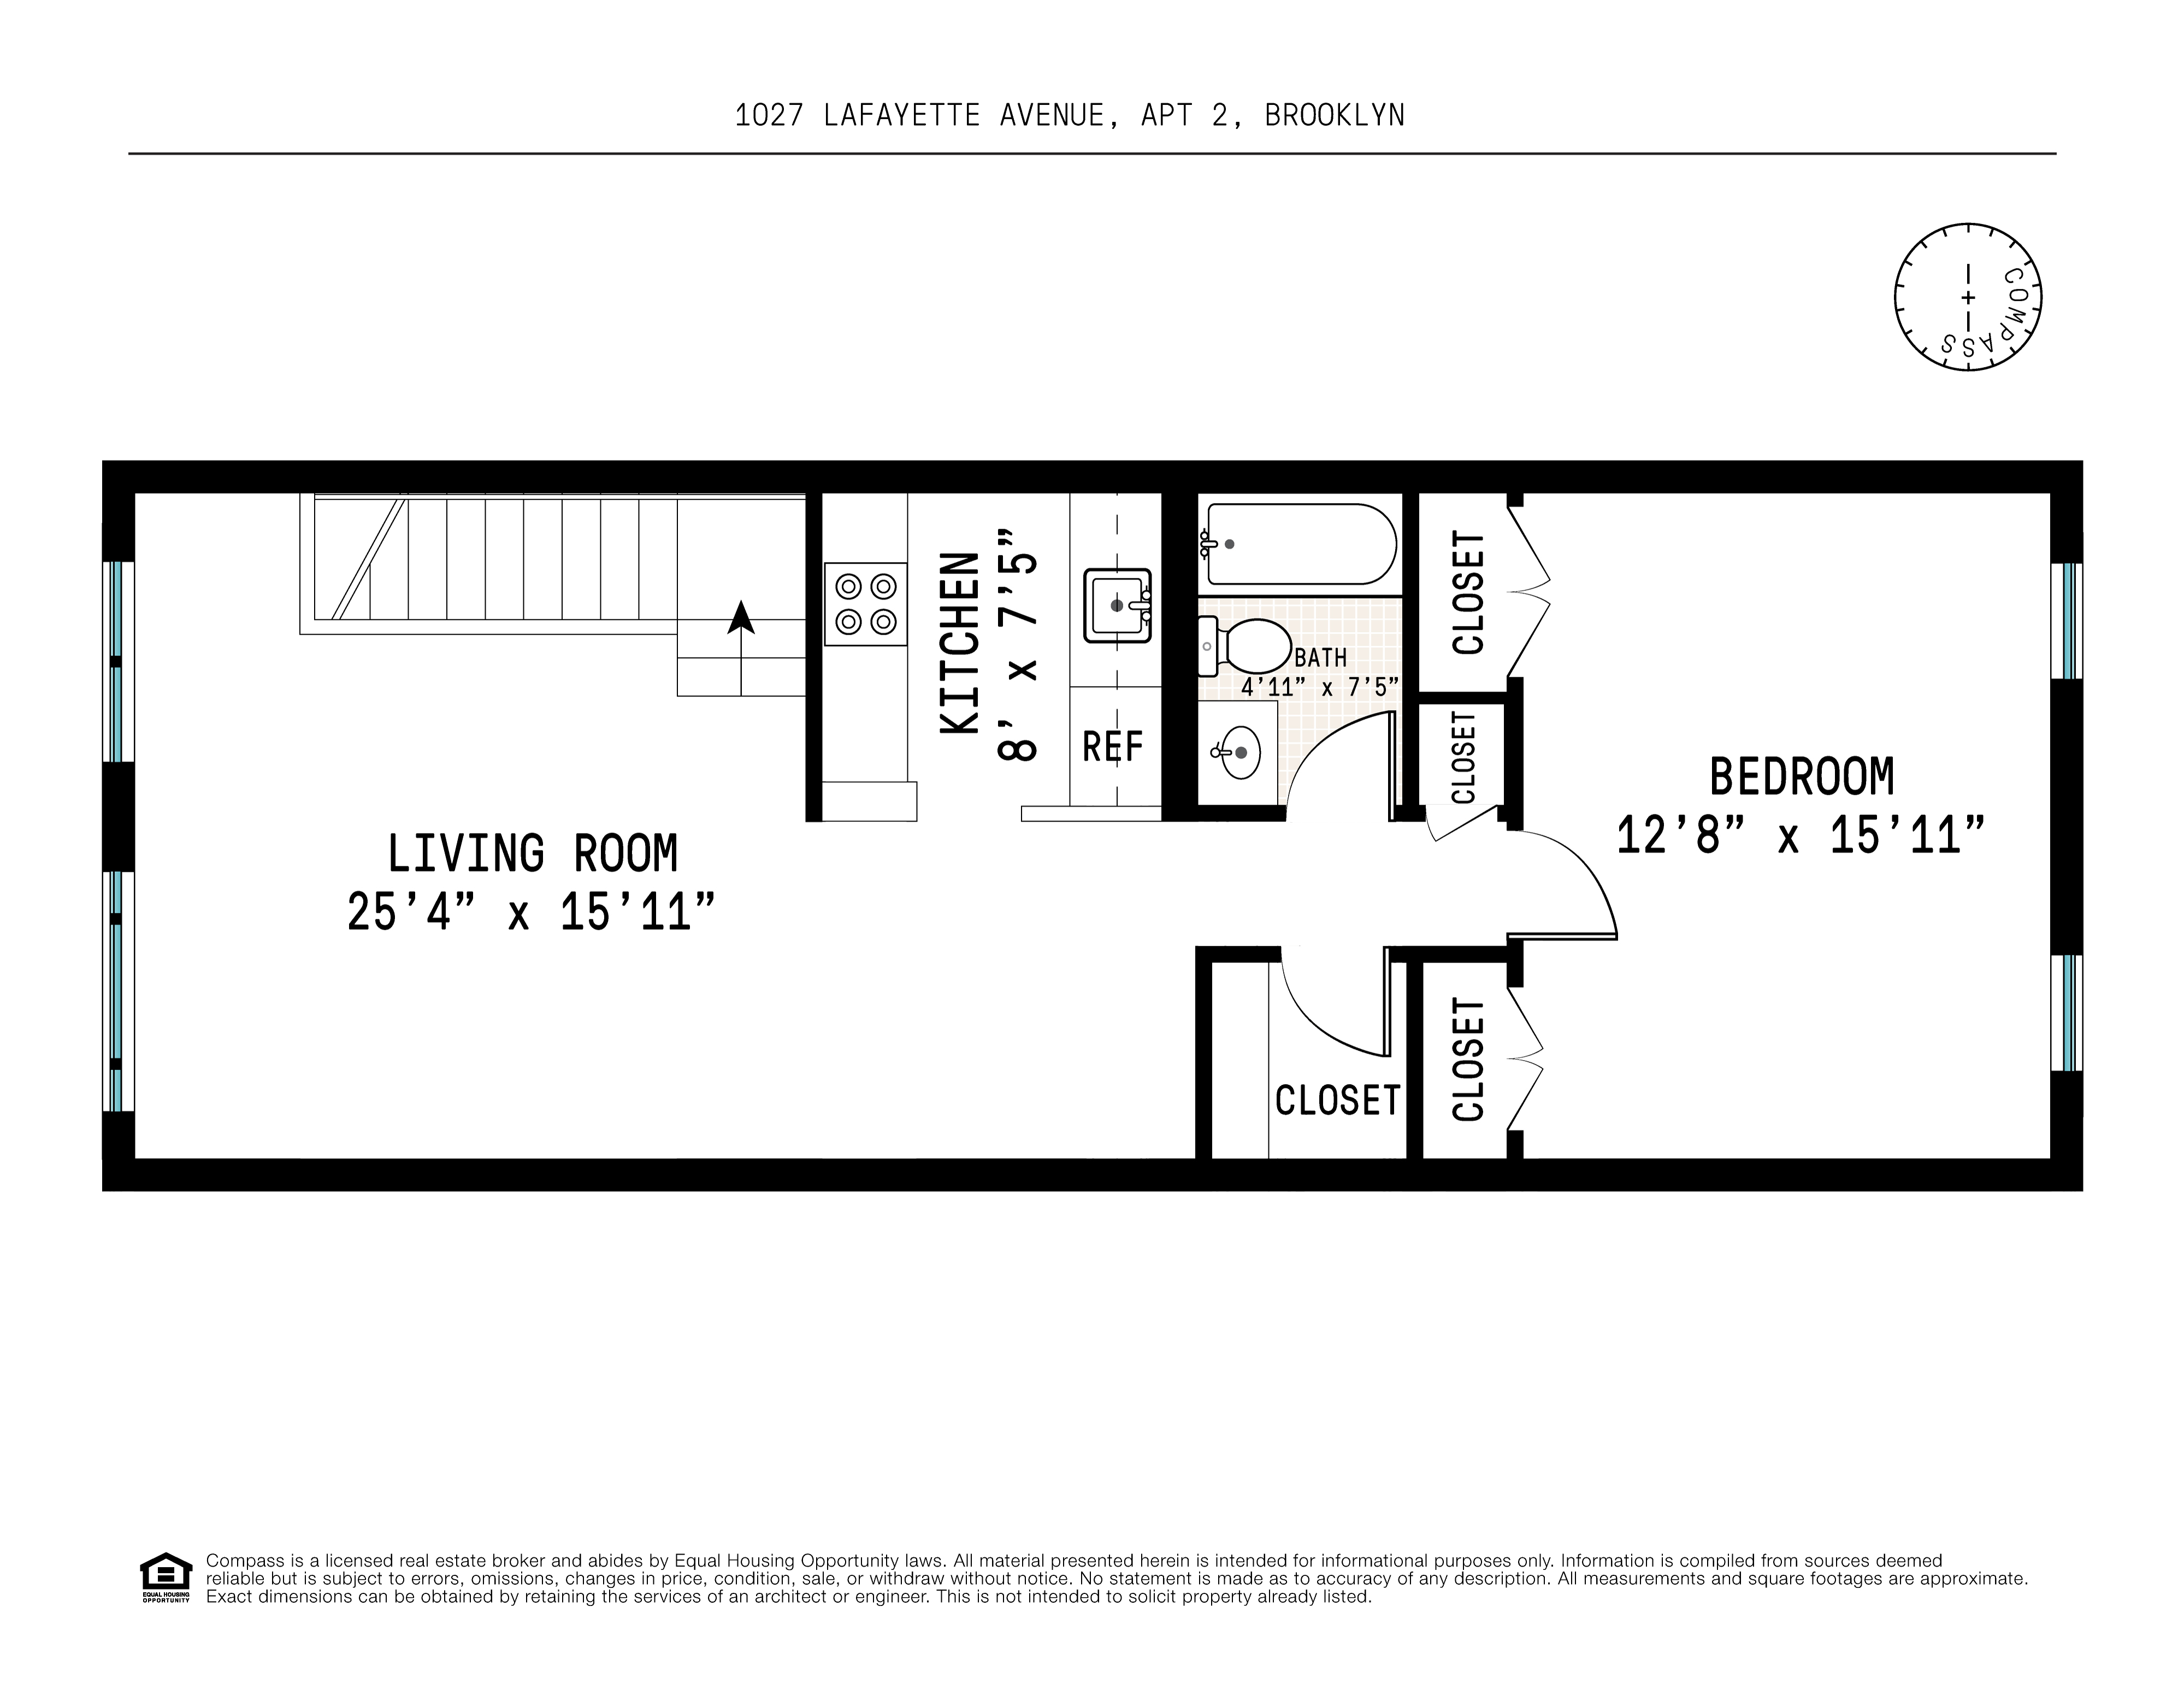 Floorplan for 1027 Lafayette Avenue, 2